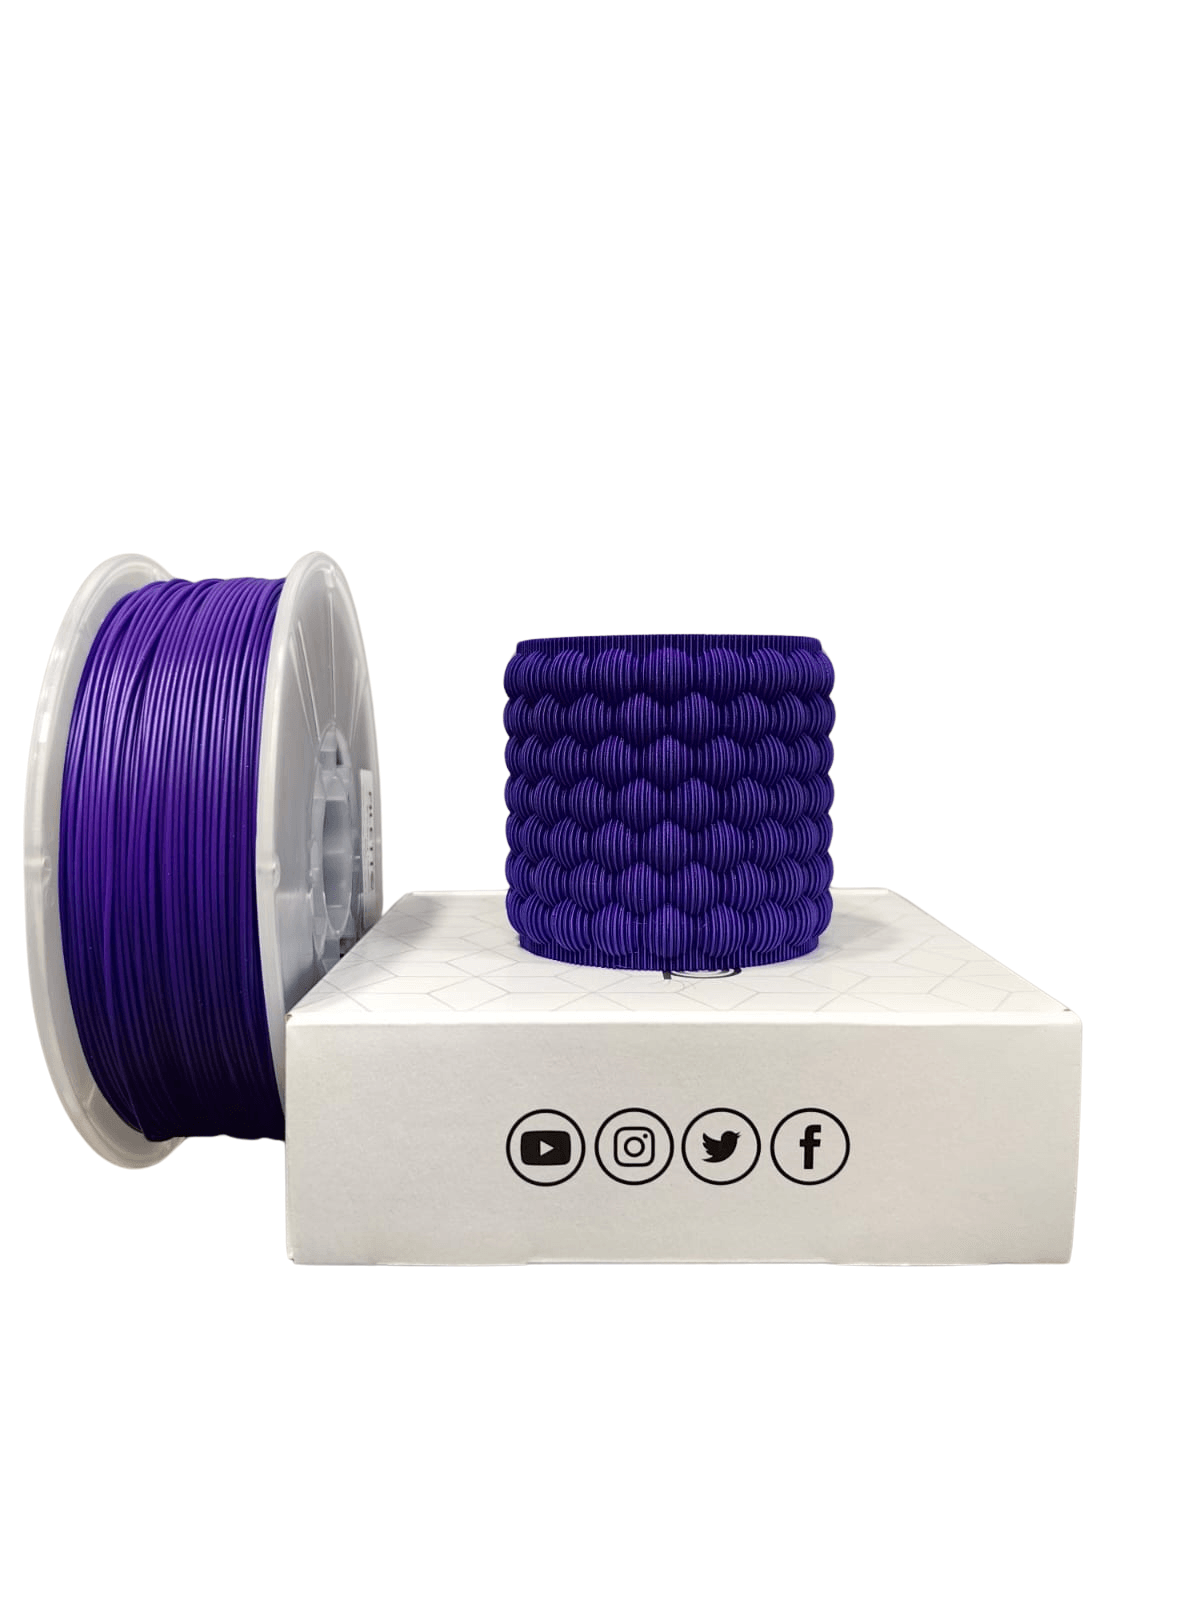 Filetto Pla+ Filament 1.75mm 1KG - Purple